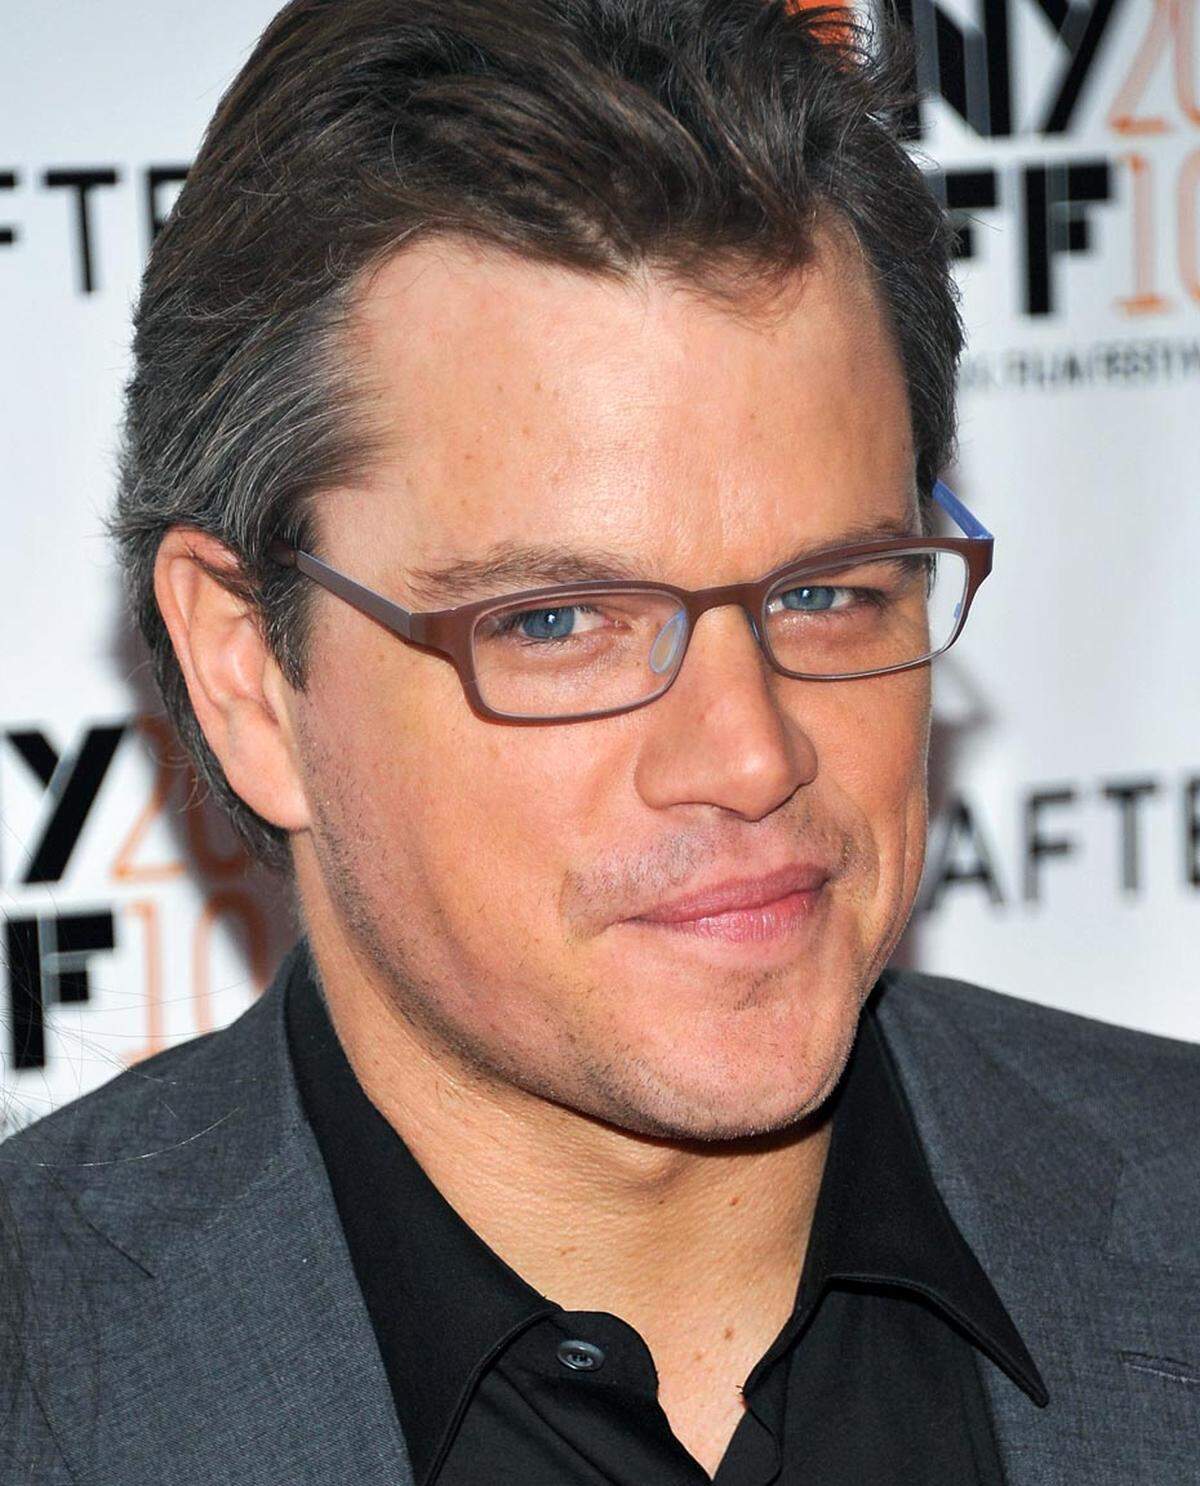 Matt Damon spielte 2007 in "Das Bourne Ultimatum" und "Ocean’s Thirteen". Seit 2005 ist er mit Luciana Barroso verheiratet.